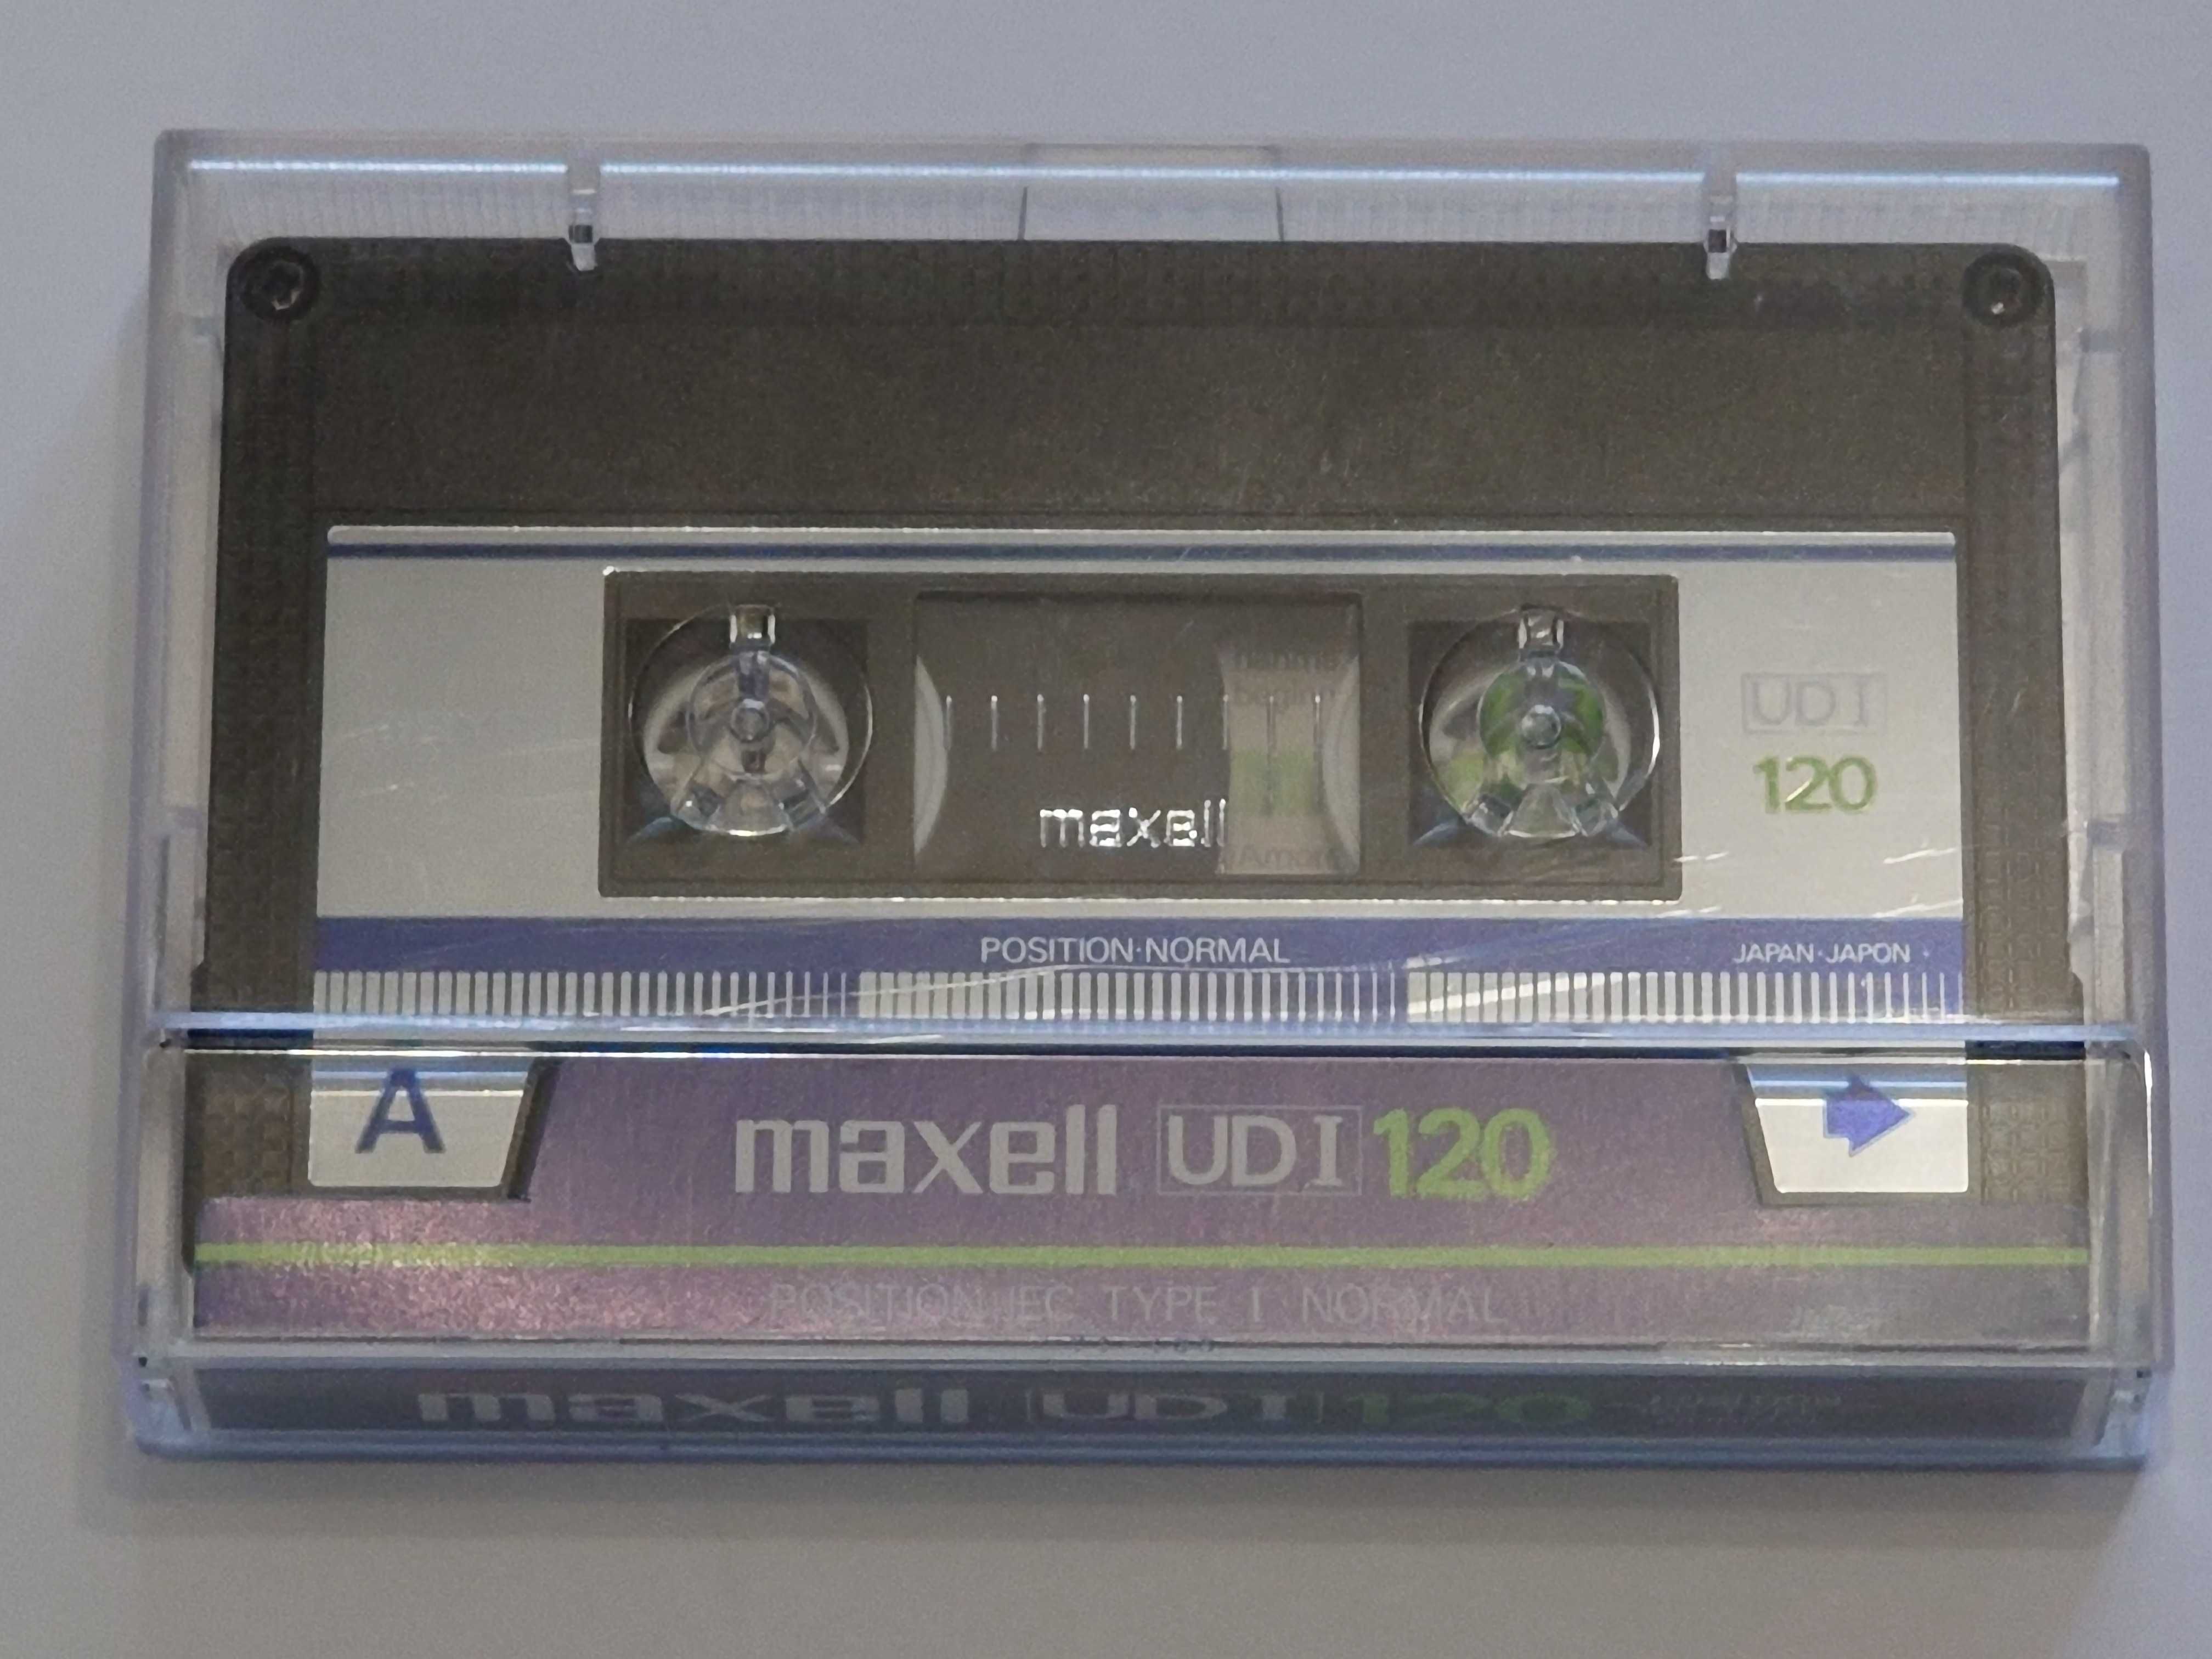 Maxell UDI 120 na lata 1985/87 rynek Europejski - używana!